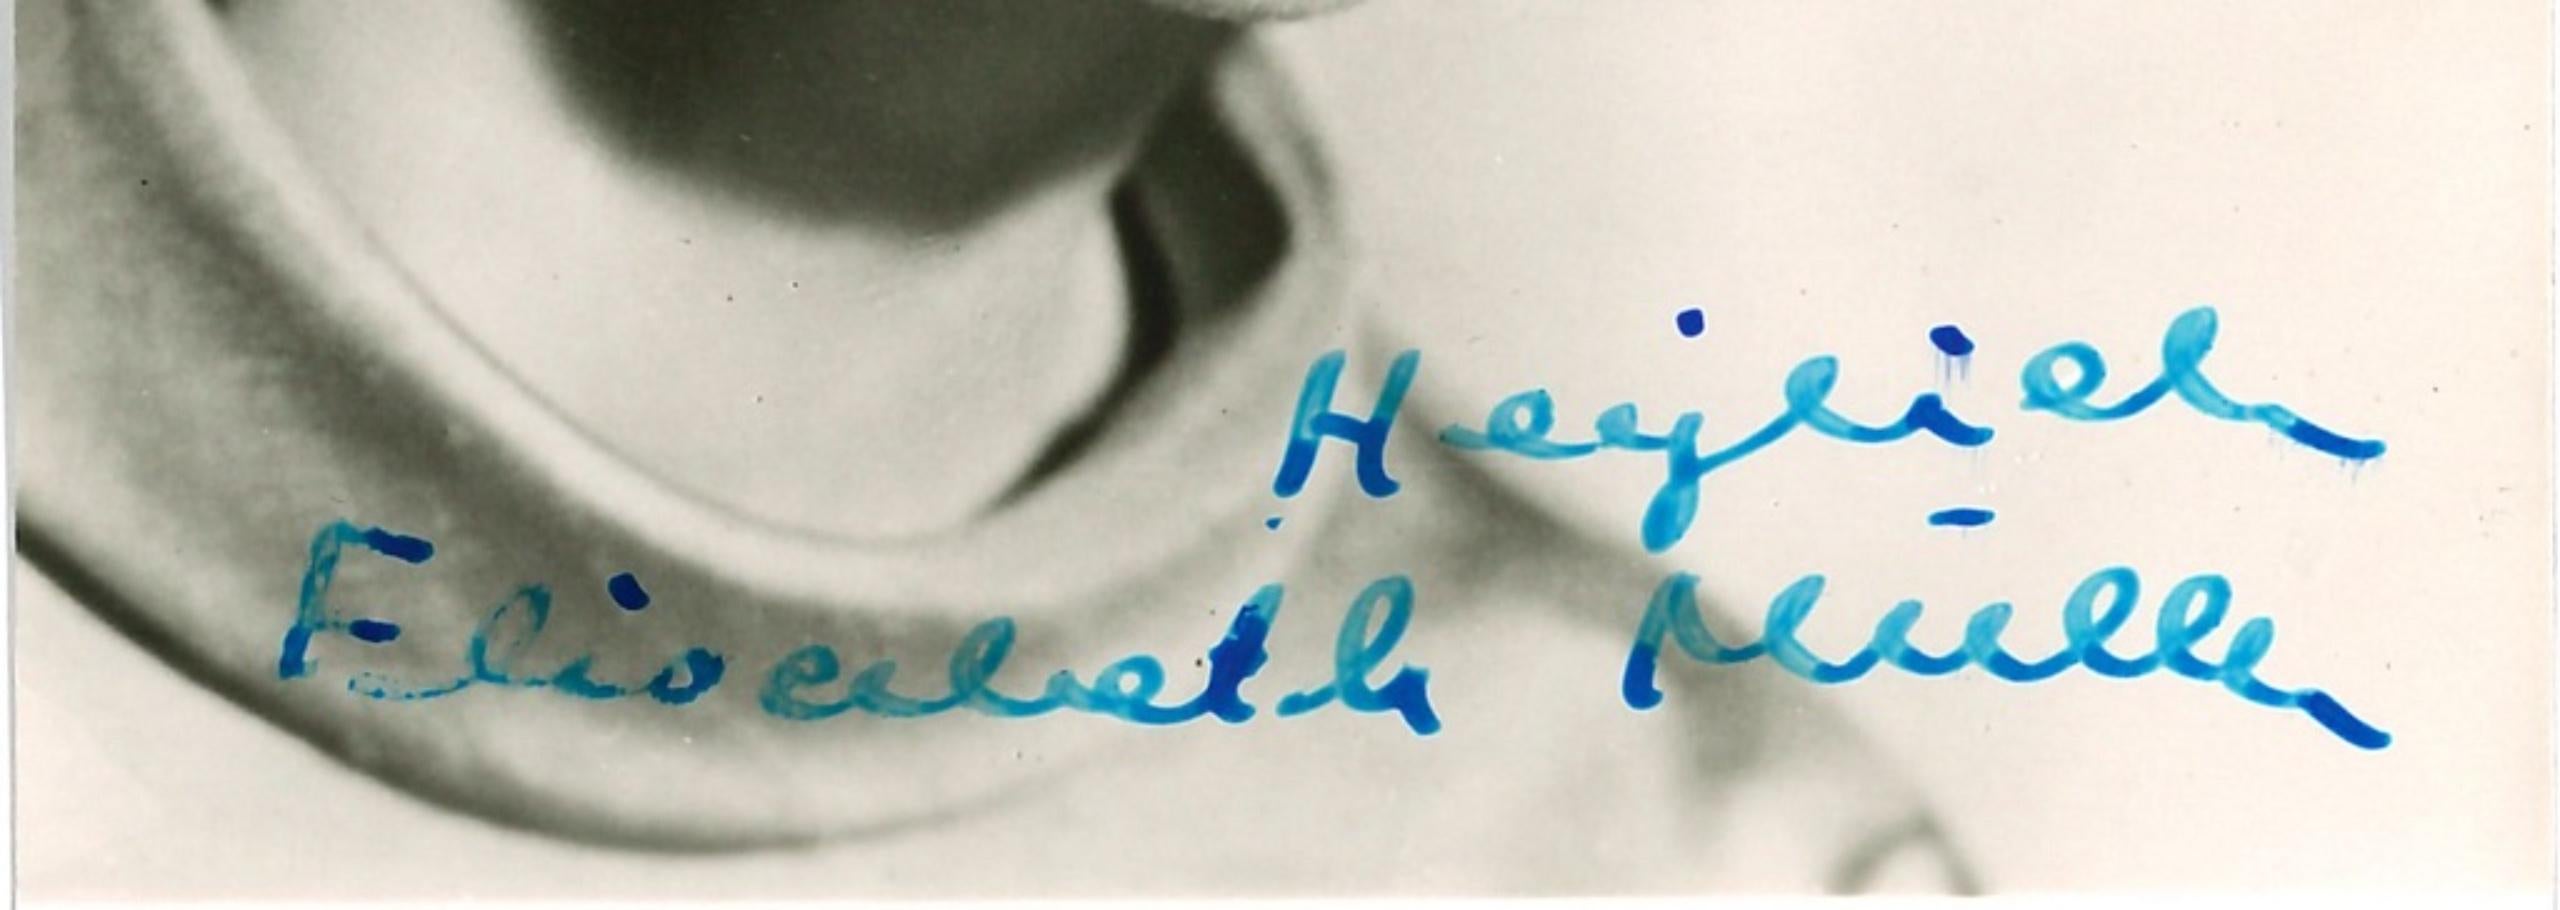 Autographisches Porträt von Elisabeth Mller - 1960er Jahre – Photograph von Unknown